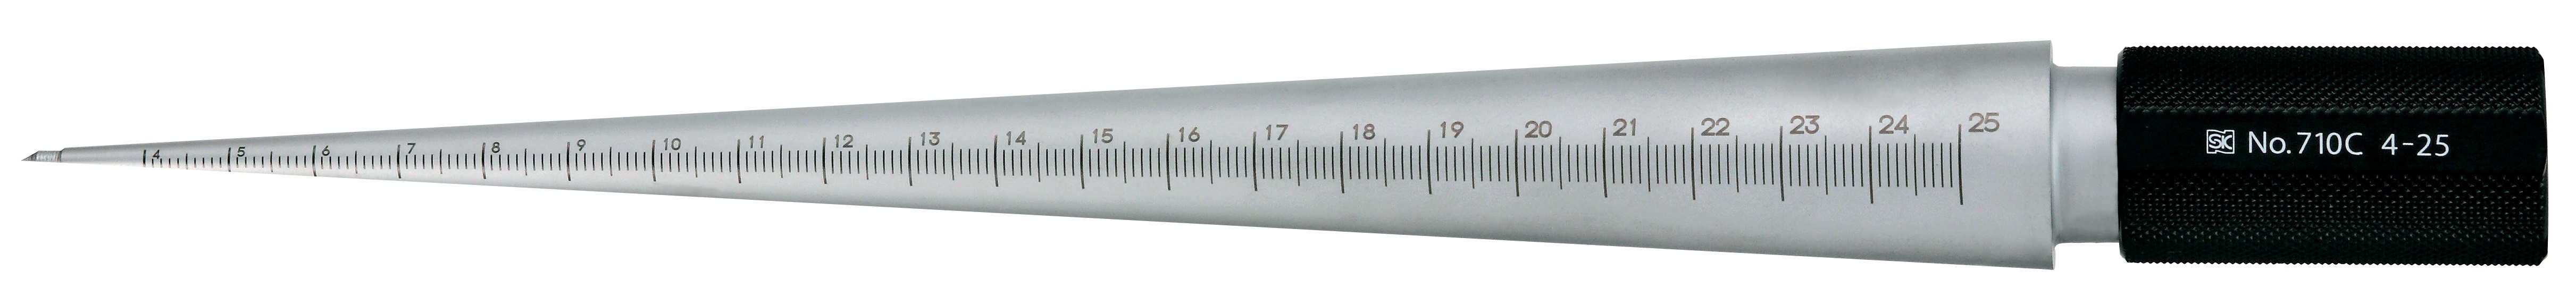 Calibres cónicos - cilíndricos para medir el tamaño del agujero, acabado plateado, TPG 710 TPG-710C